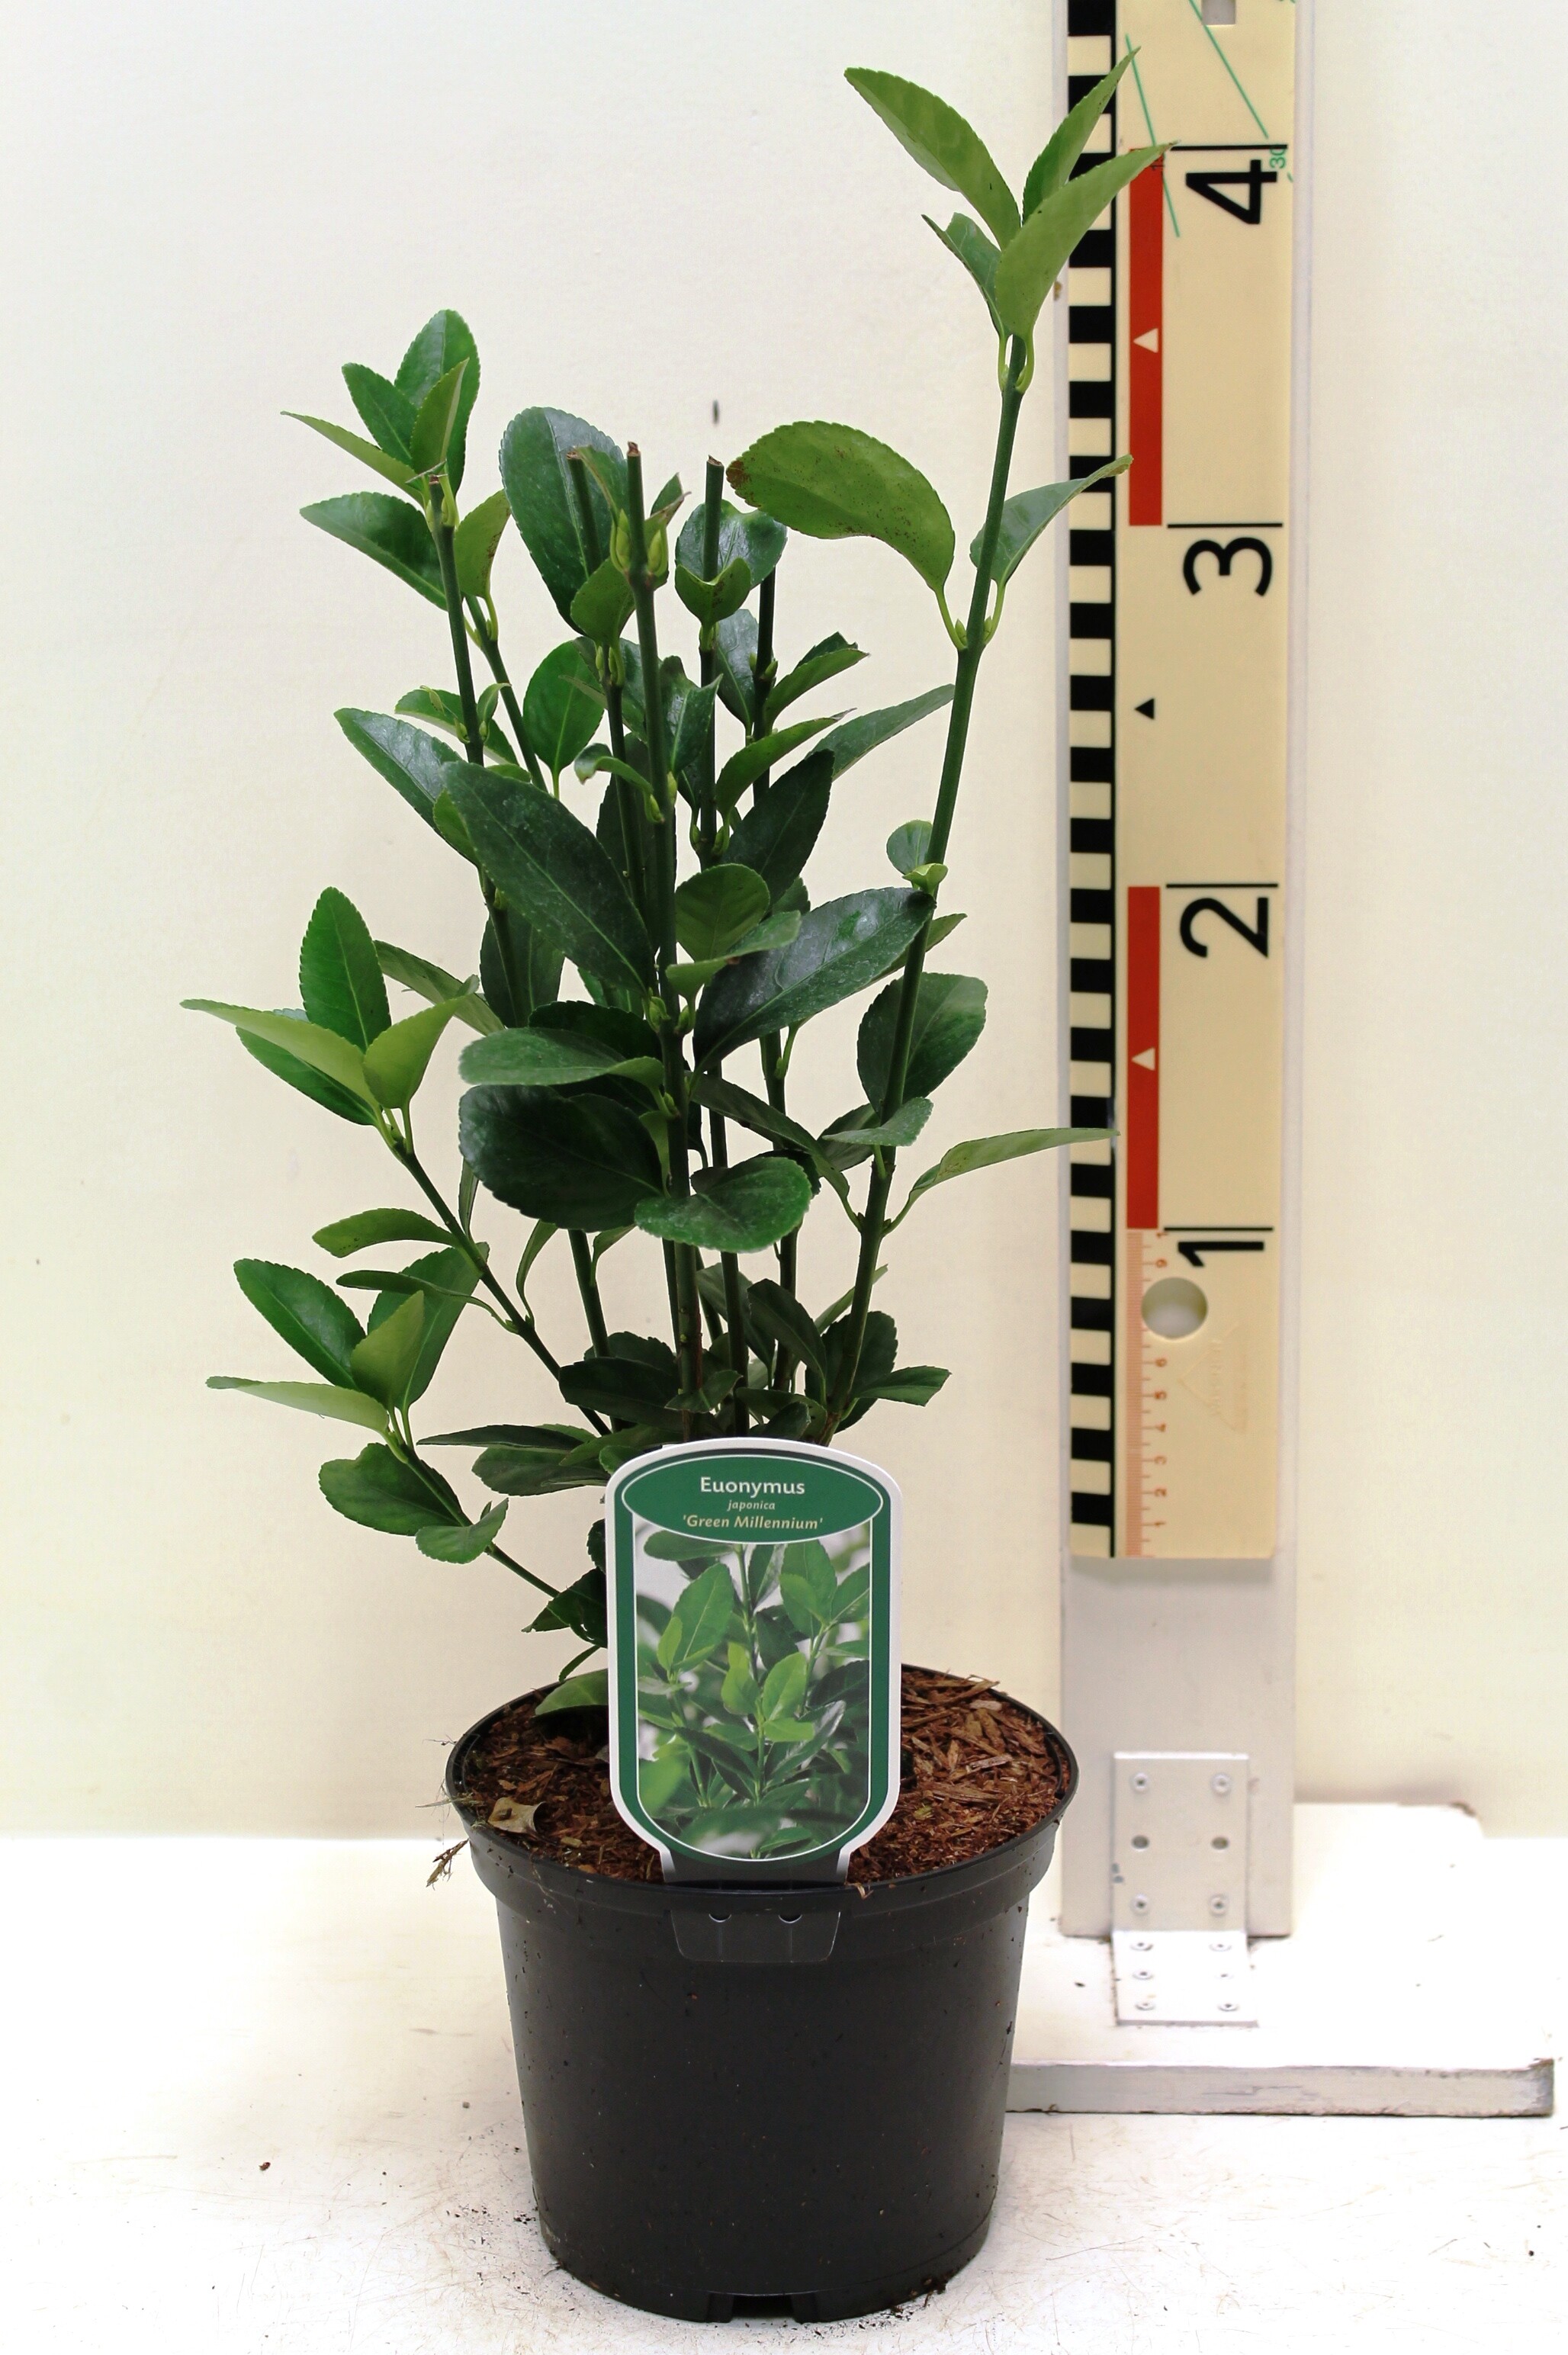 Euonymus japonica 'Green Millennium' c2